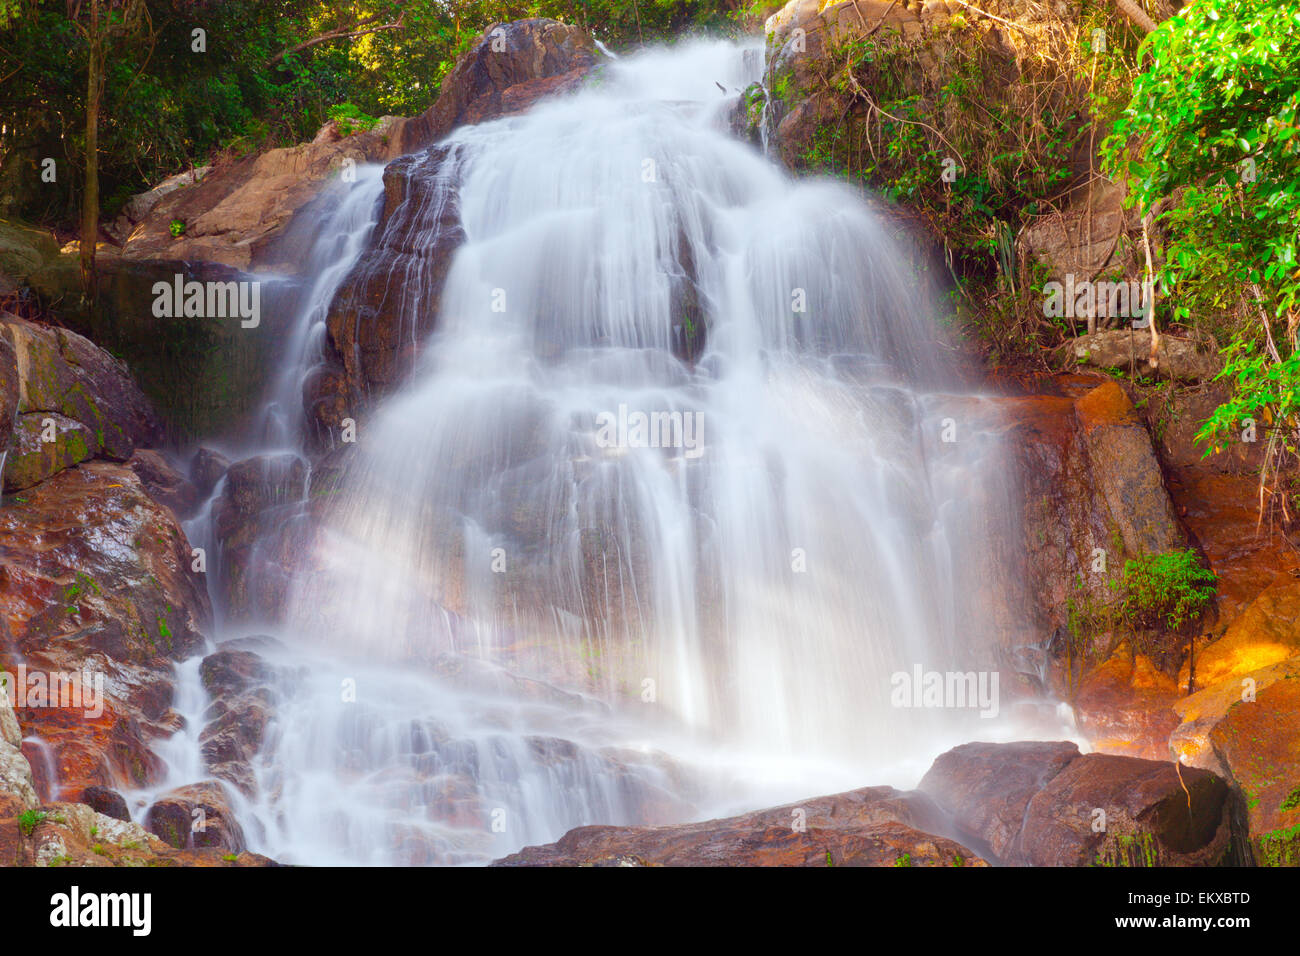 Na Muang 2 waterfall, Koh Samui, Thailand Stock Photo